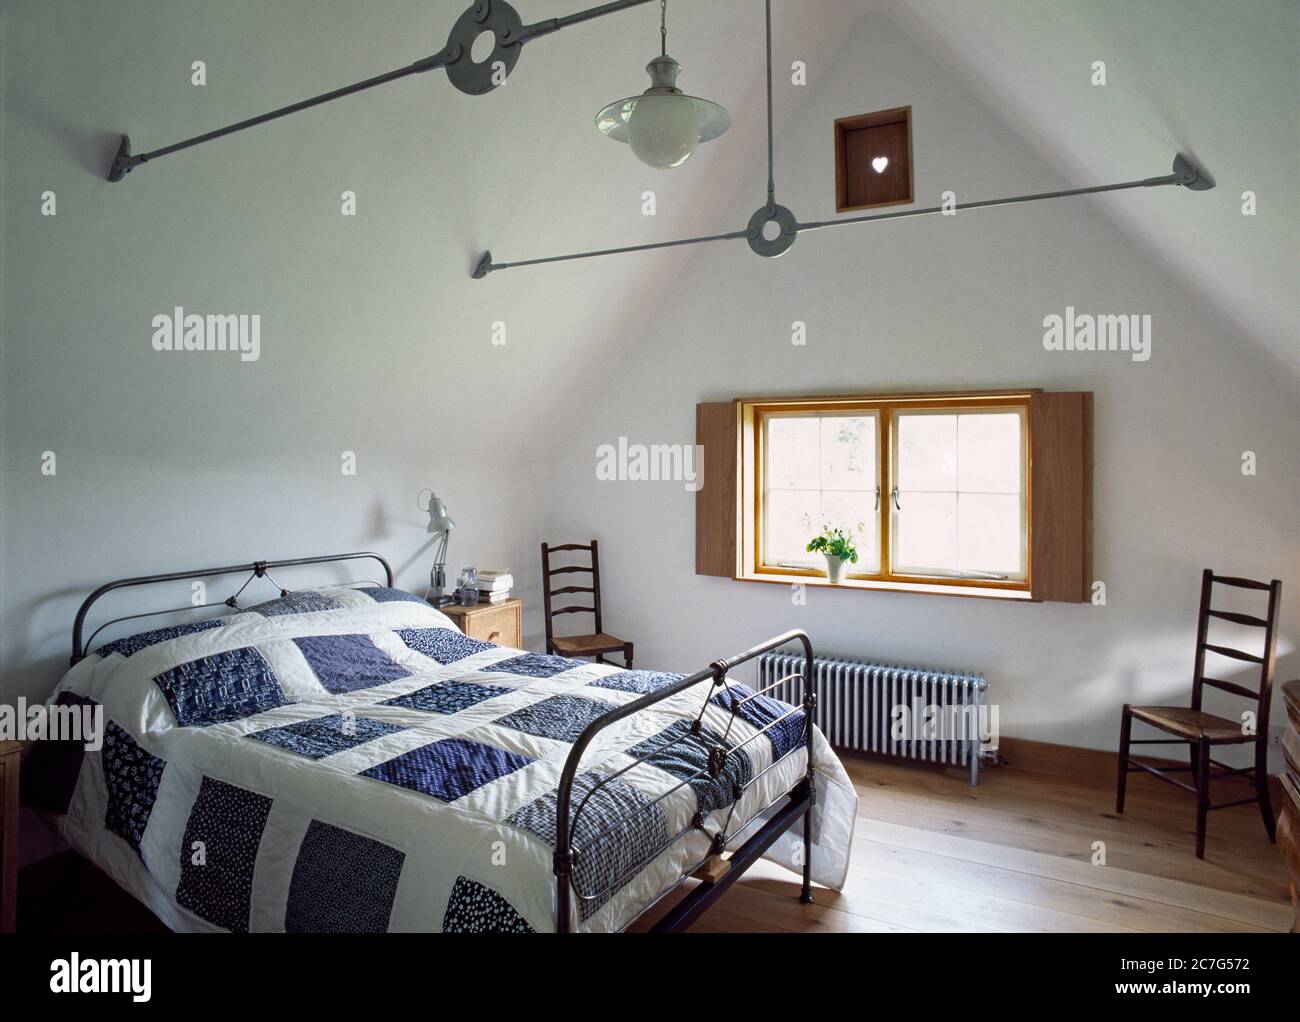 Schlafzimmer-Interieur eines reetgedeckten, Holzrahmen-Häuschen mit Lehmpchenfüllung auf einem Ziegelsockel. Stockfoto